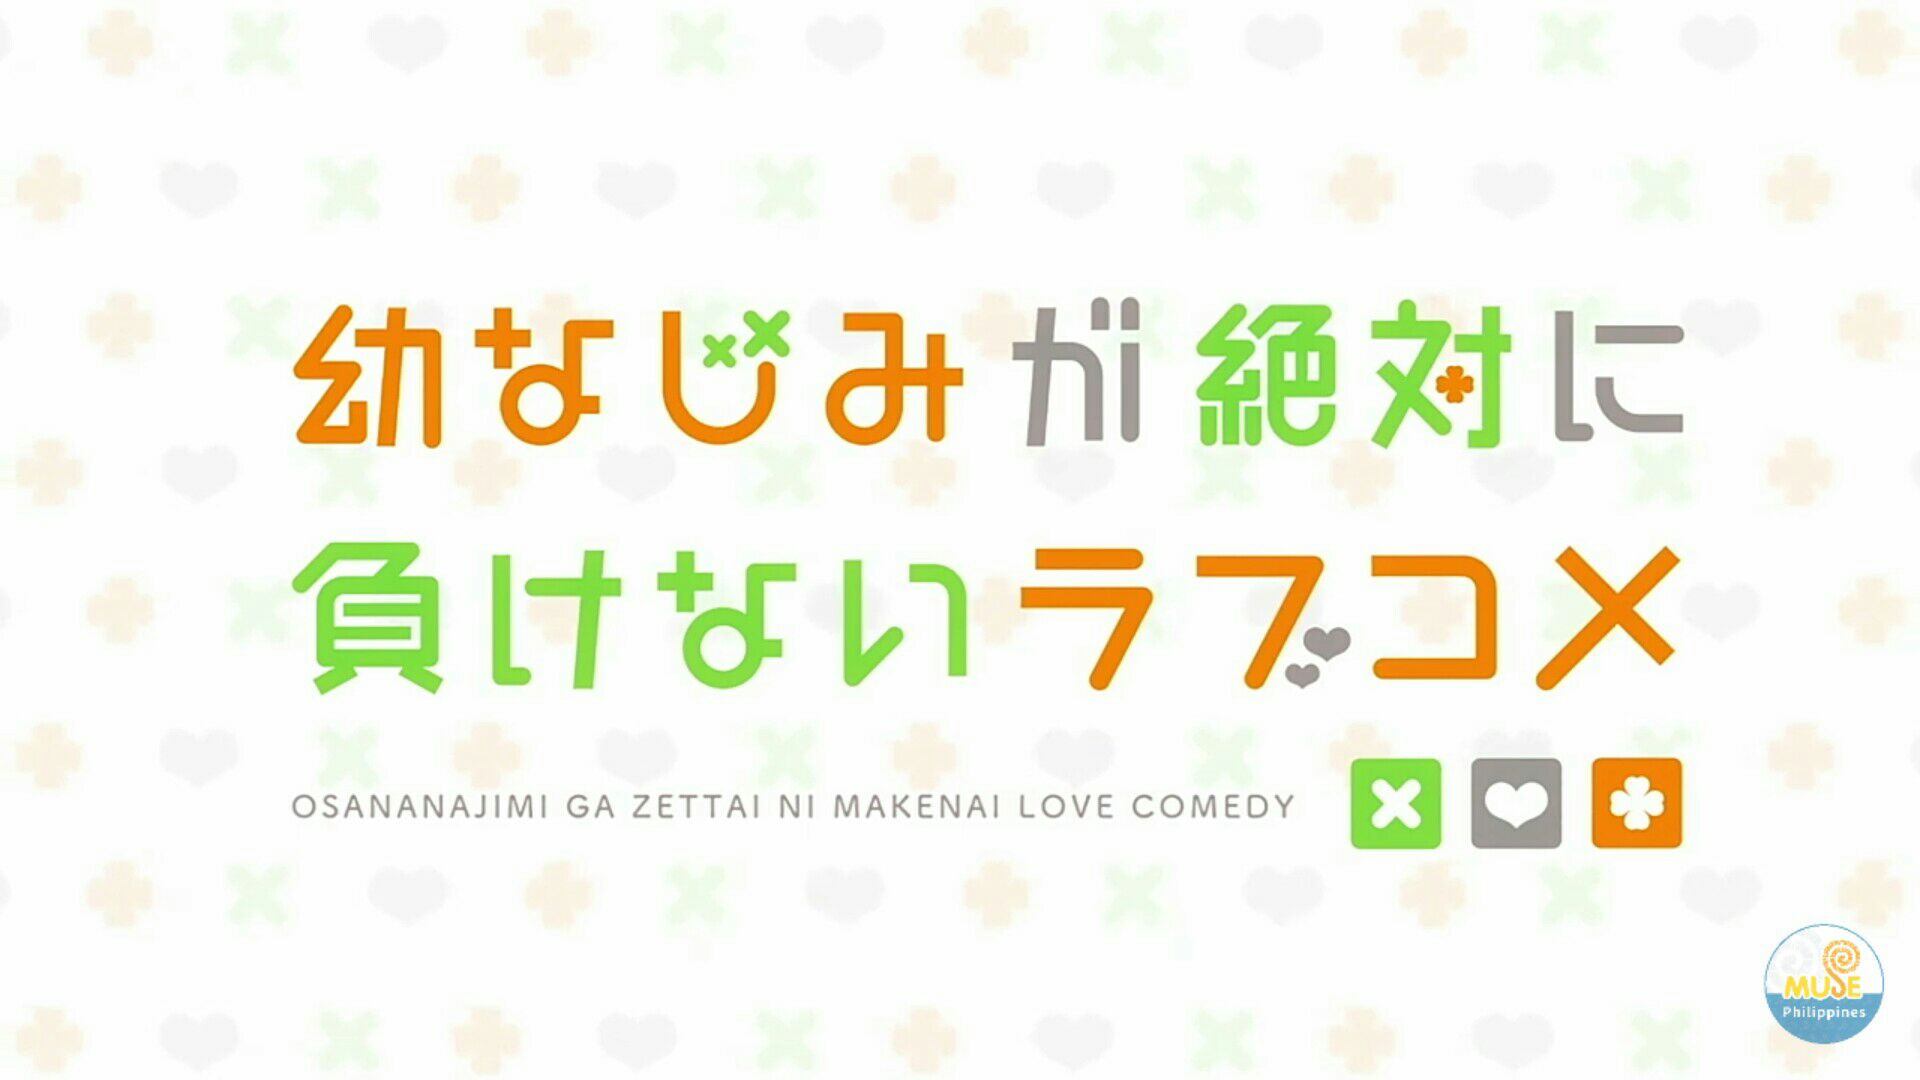 Osananajimi ga Zettai ni Makenai Love Comedy Episode #12